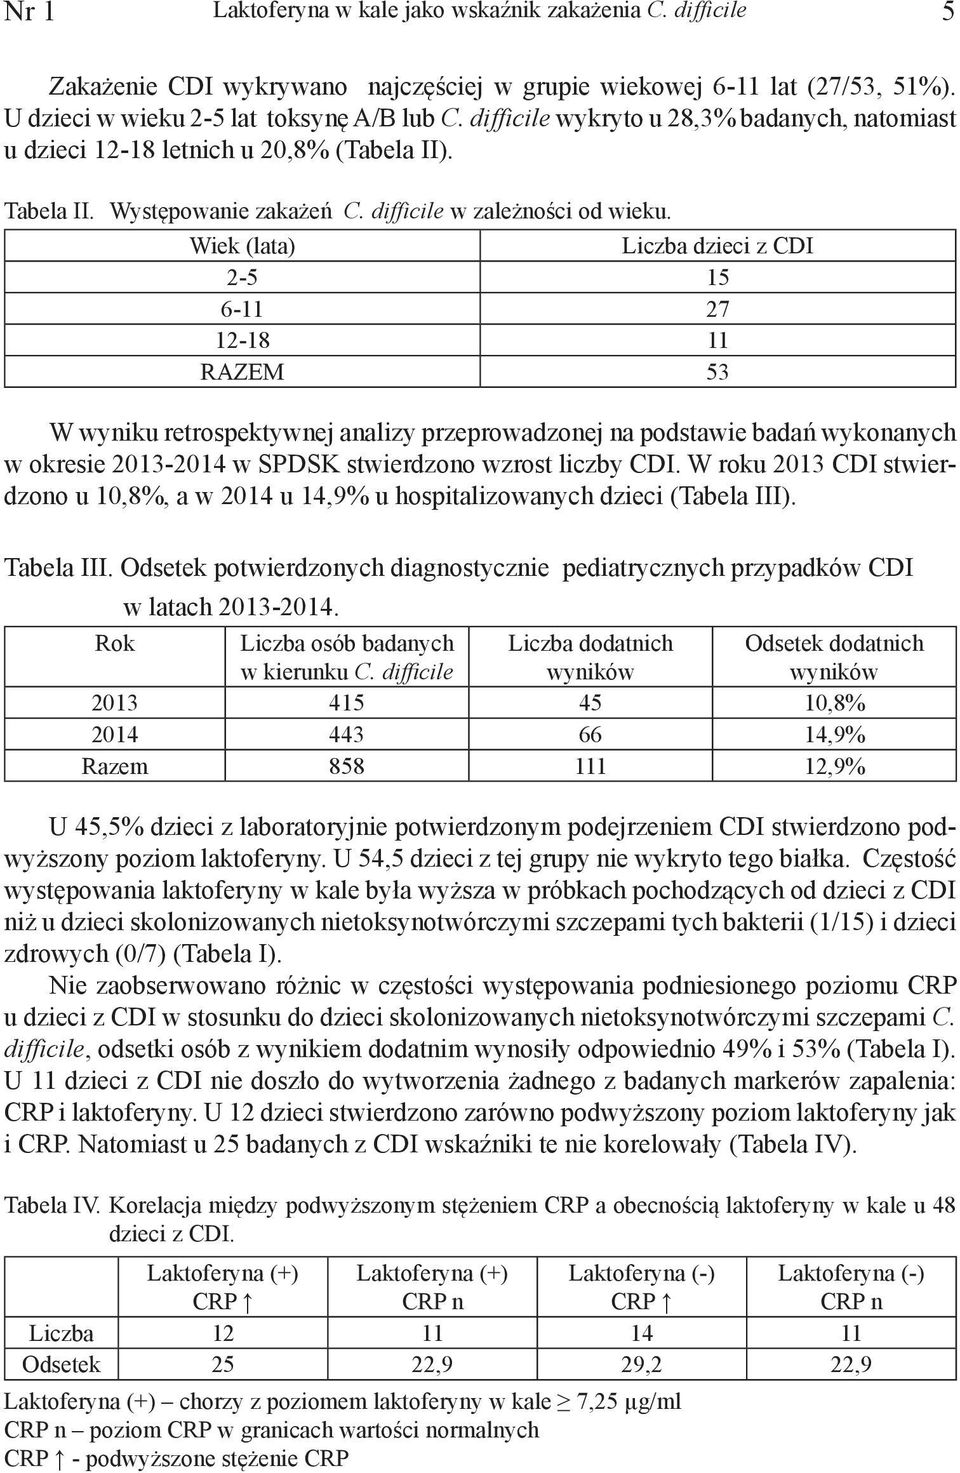 Wiek (lata) Liczba dzieci z CDI 2-5 15 6-11 27 12-18 11 RAZEM 53 W wyniku retrospektywnej analizy przeprowadzonej na podstawie badań wykonanych w okresie 2013-2014 w SPDSK stwierdzono wzrost liczby